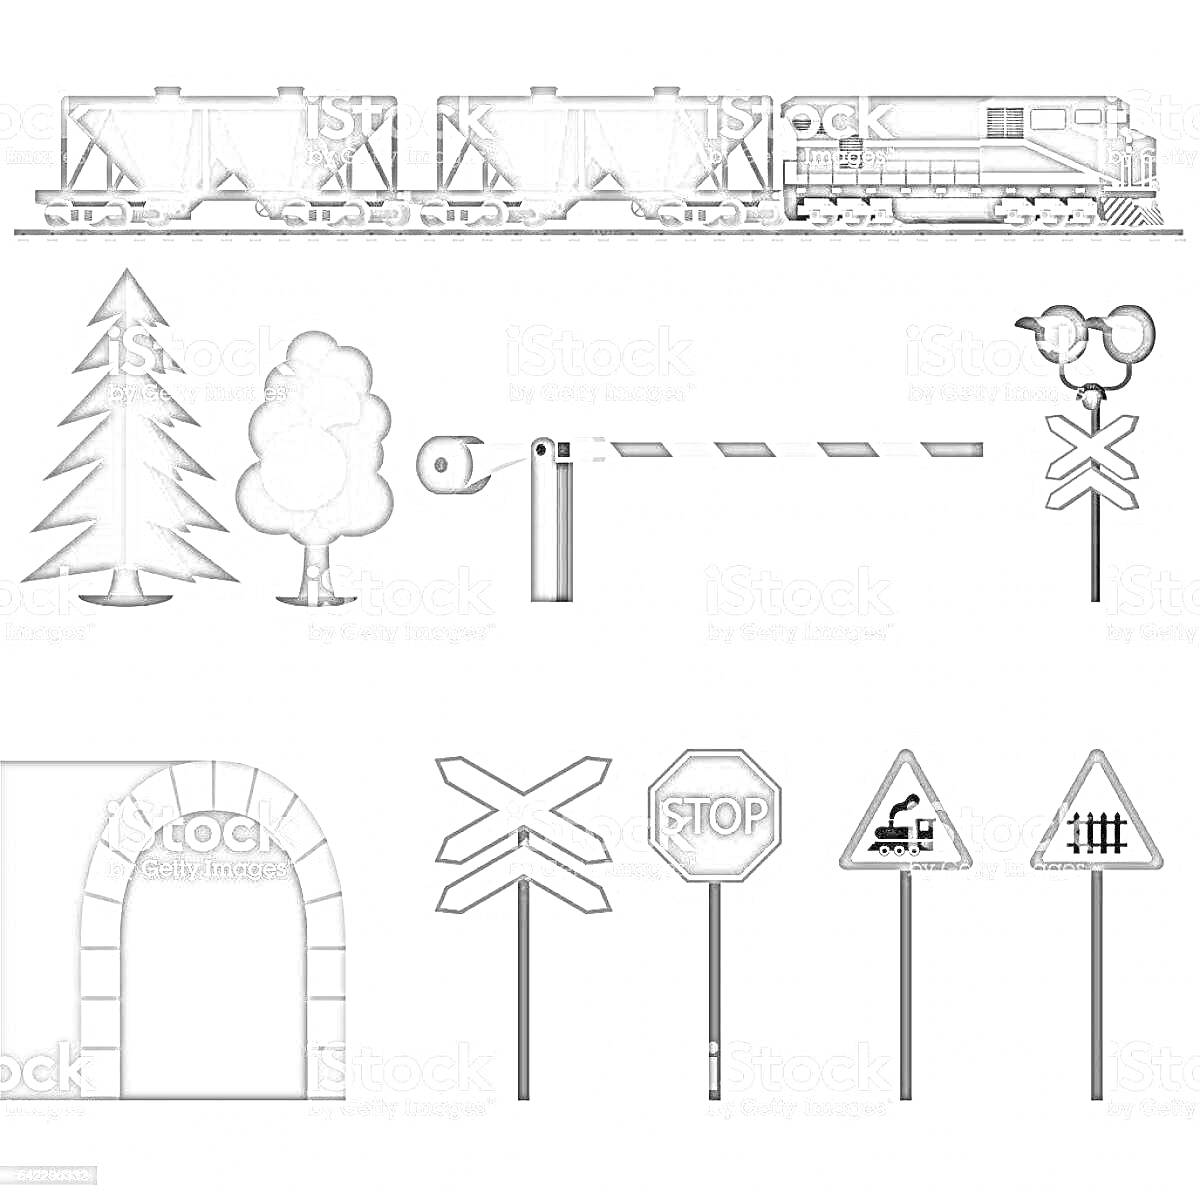 Раскраска Железнодорожный переезд с паровозом, вагонами, деревьями, шлагбаумом, светофором, дорожными знаками и туннелем.